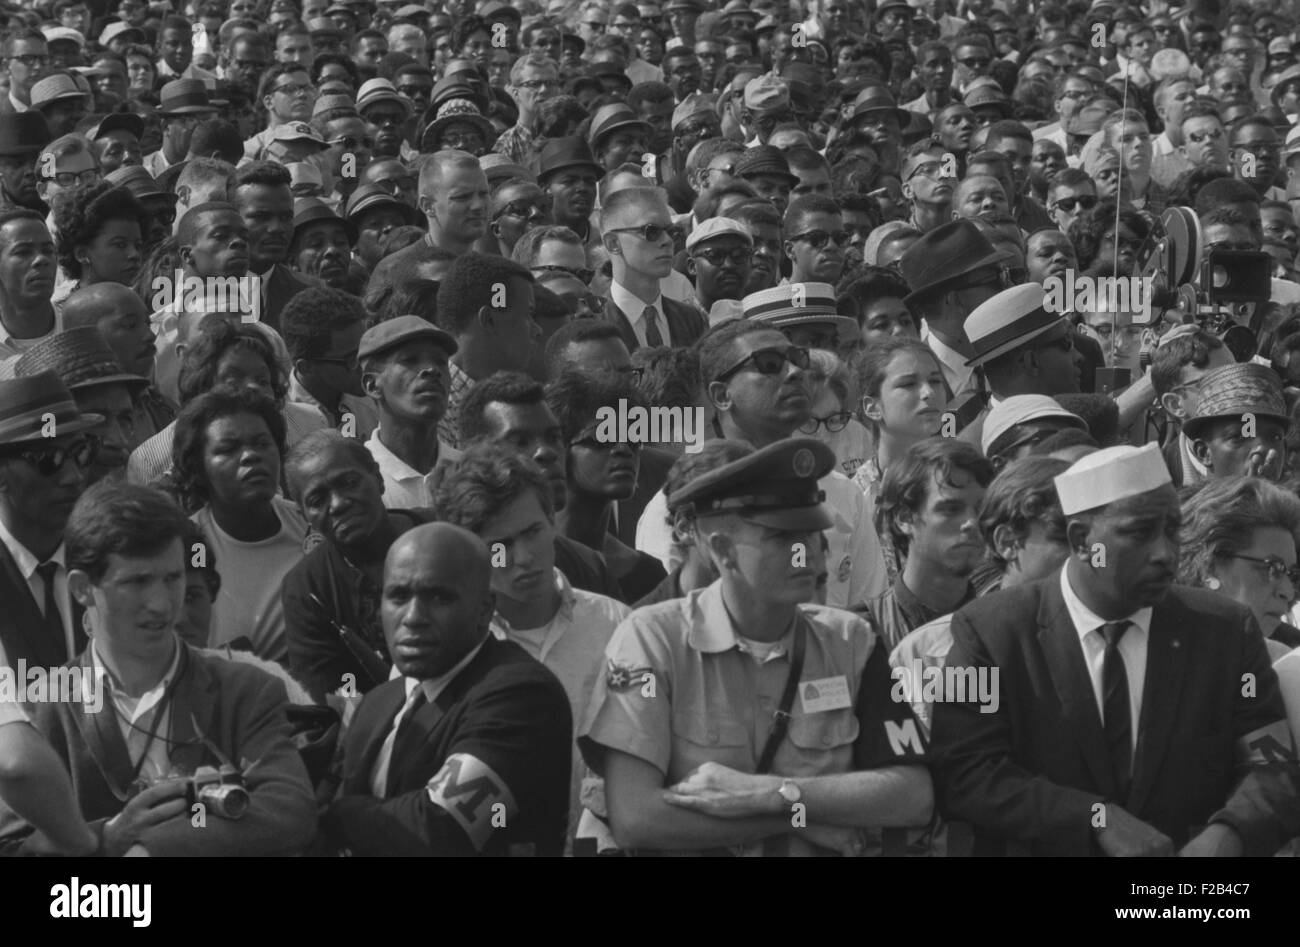 Visages dans la foule pendant la Marche sur Washington, le 28 août 1963. Observateurs estime que 75 à 80 % des marcheurs étaient noirs. - Banque D'Images